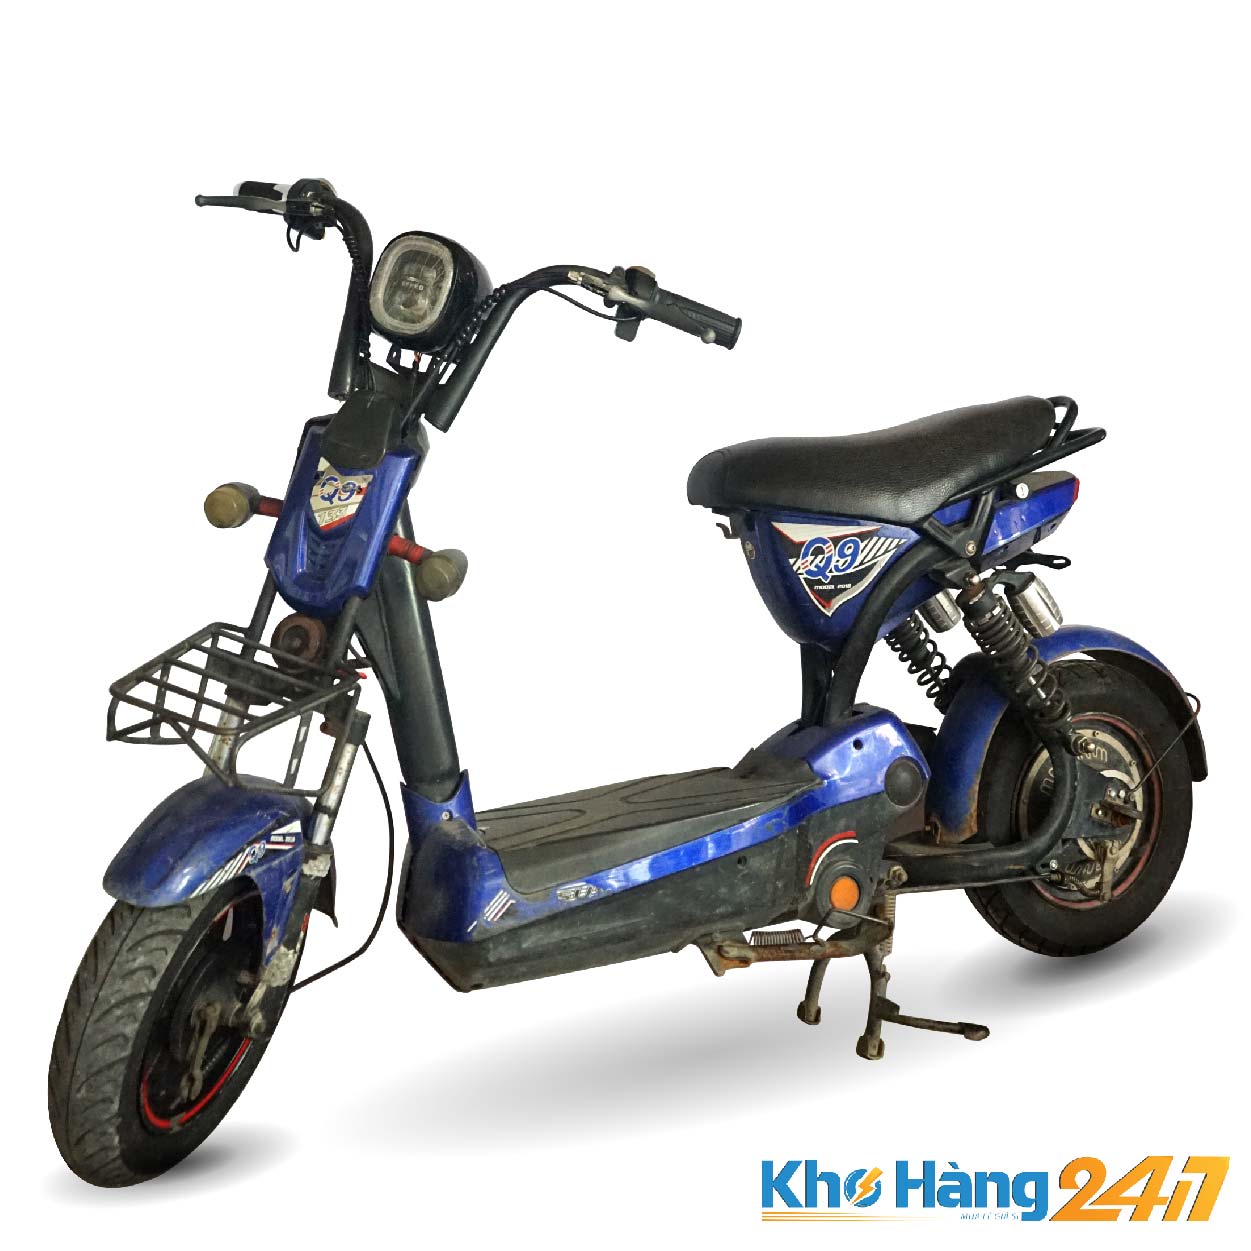 xe dap dien 133 q9 khohang247 01 - Xe đạp điện cũ 133 Q9